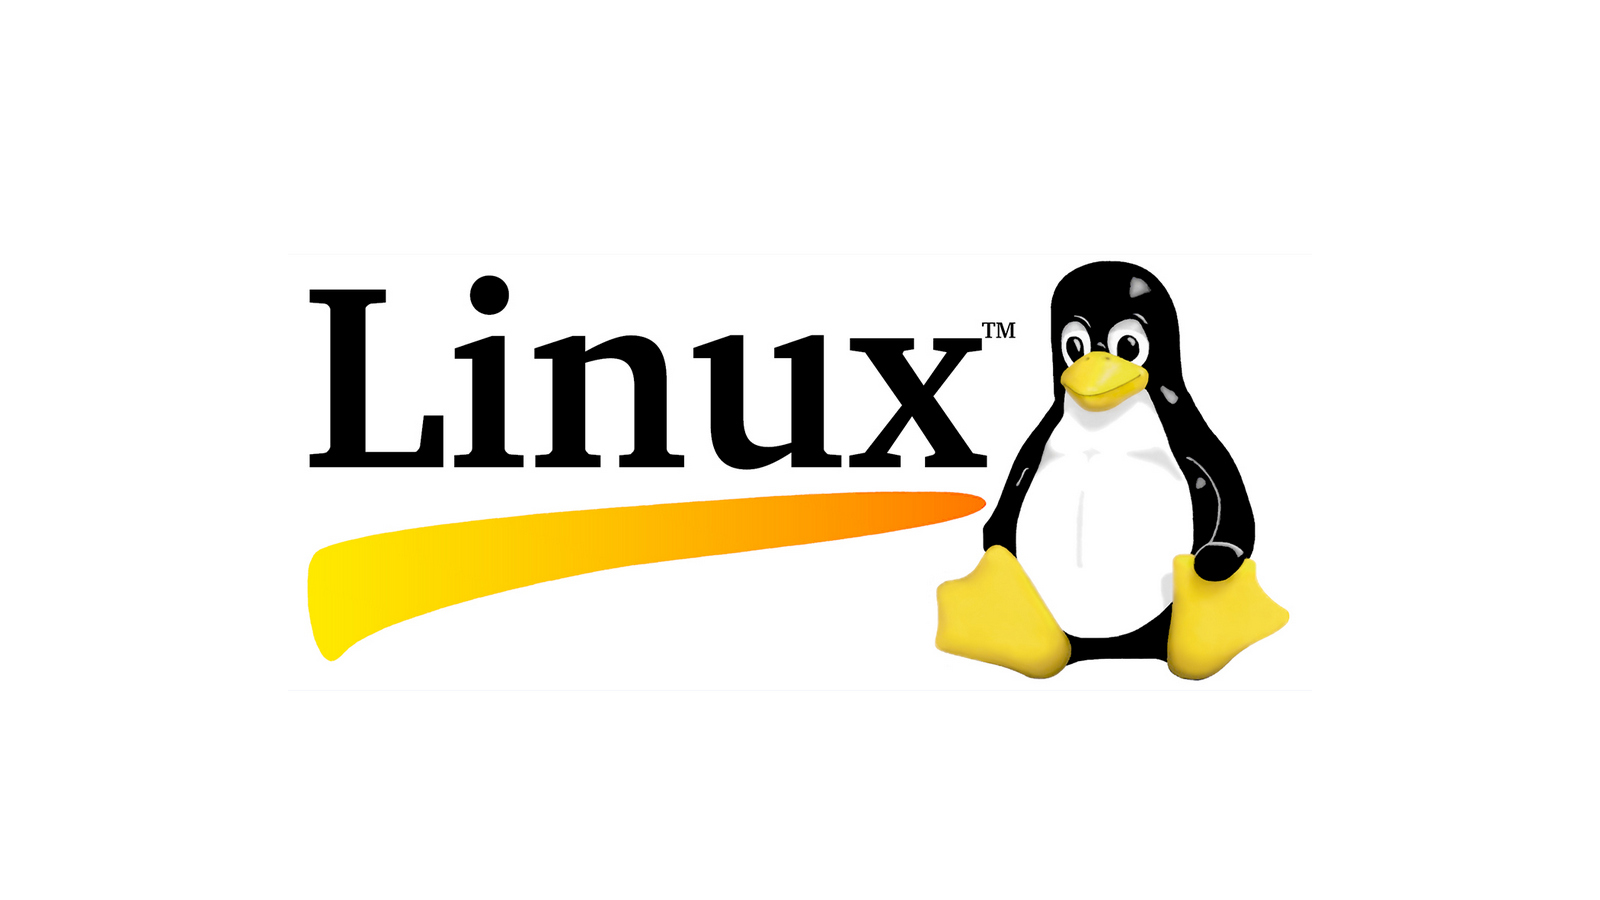 Linux user group. Linux эмблема. Linux логотип. Иконка линукс. Линукс логотип на прозрачном фоне.